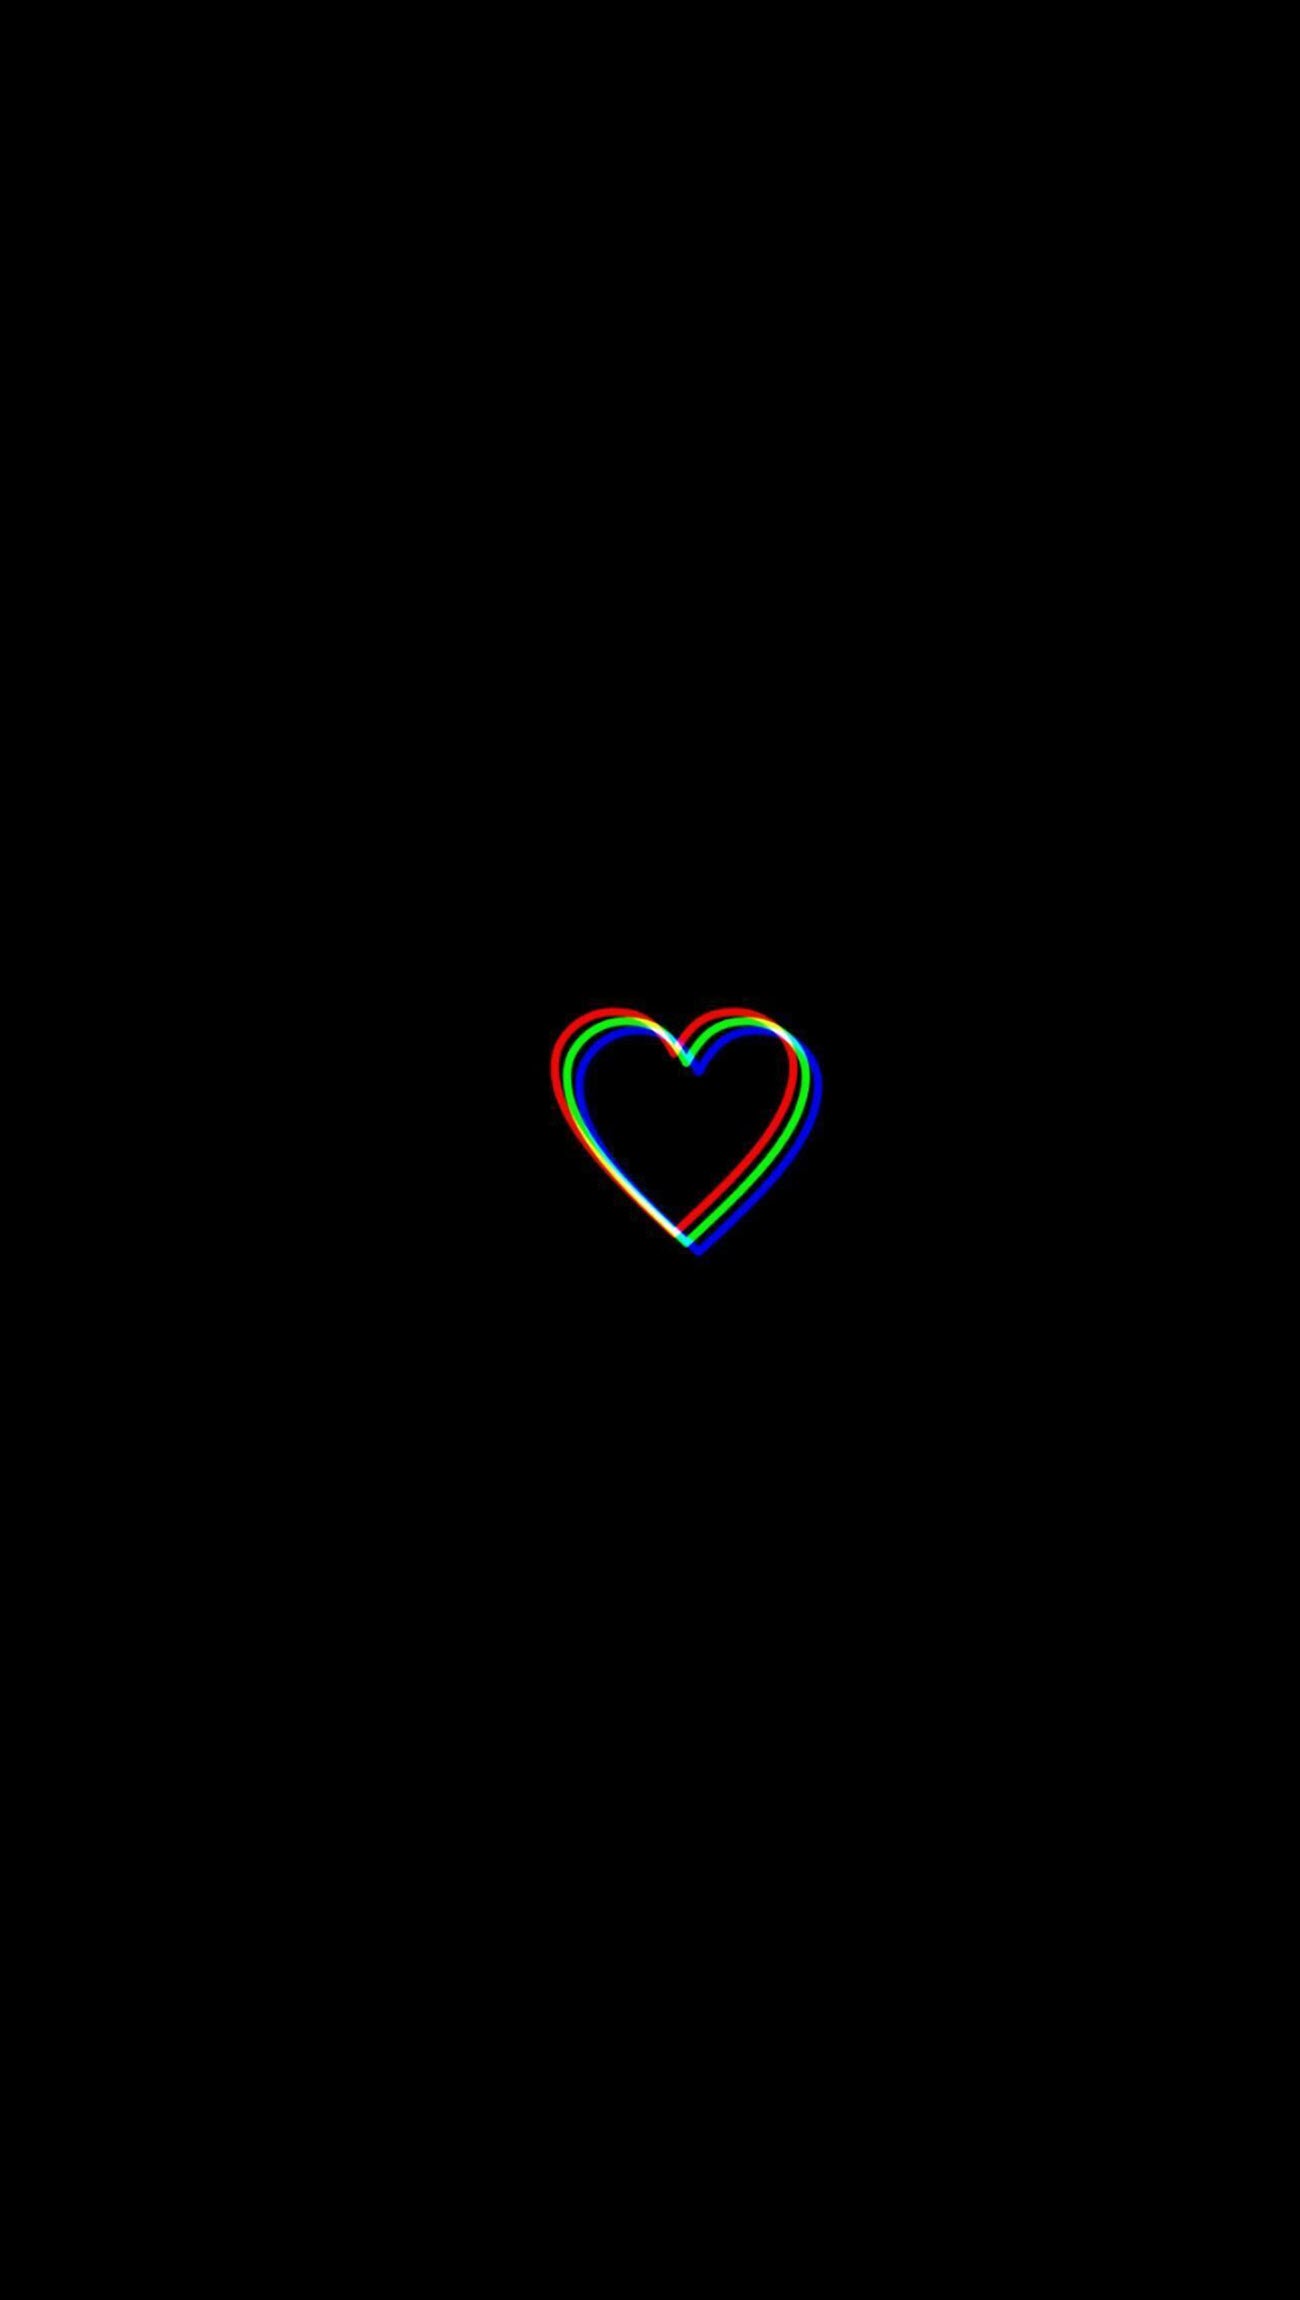 Trái tim vỡ đen là một biểu tượng của sự trăn trở, chất chứa những nỗi đau thấu đáo. Hình ảnh về trái tim này sẽ giúp cho chúng ta ý thức hơn về sự đau khổ và trân trọng những cảm xúc của chúng ta, đồng thời mang lại kết quả tốt đẹp hơn trong tương lai.